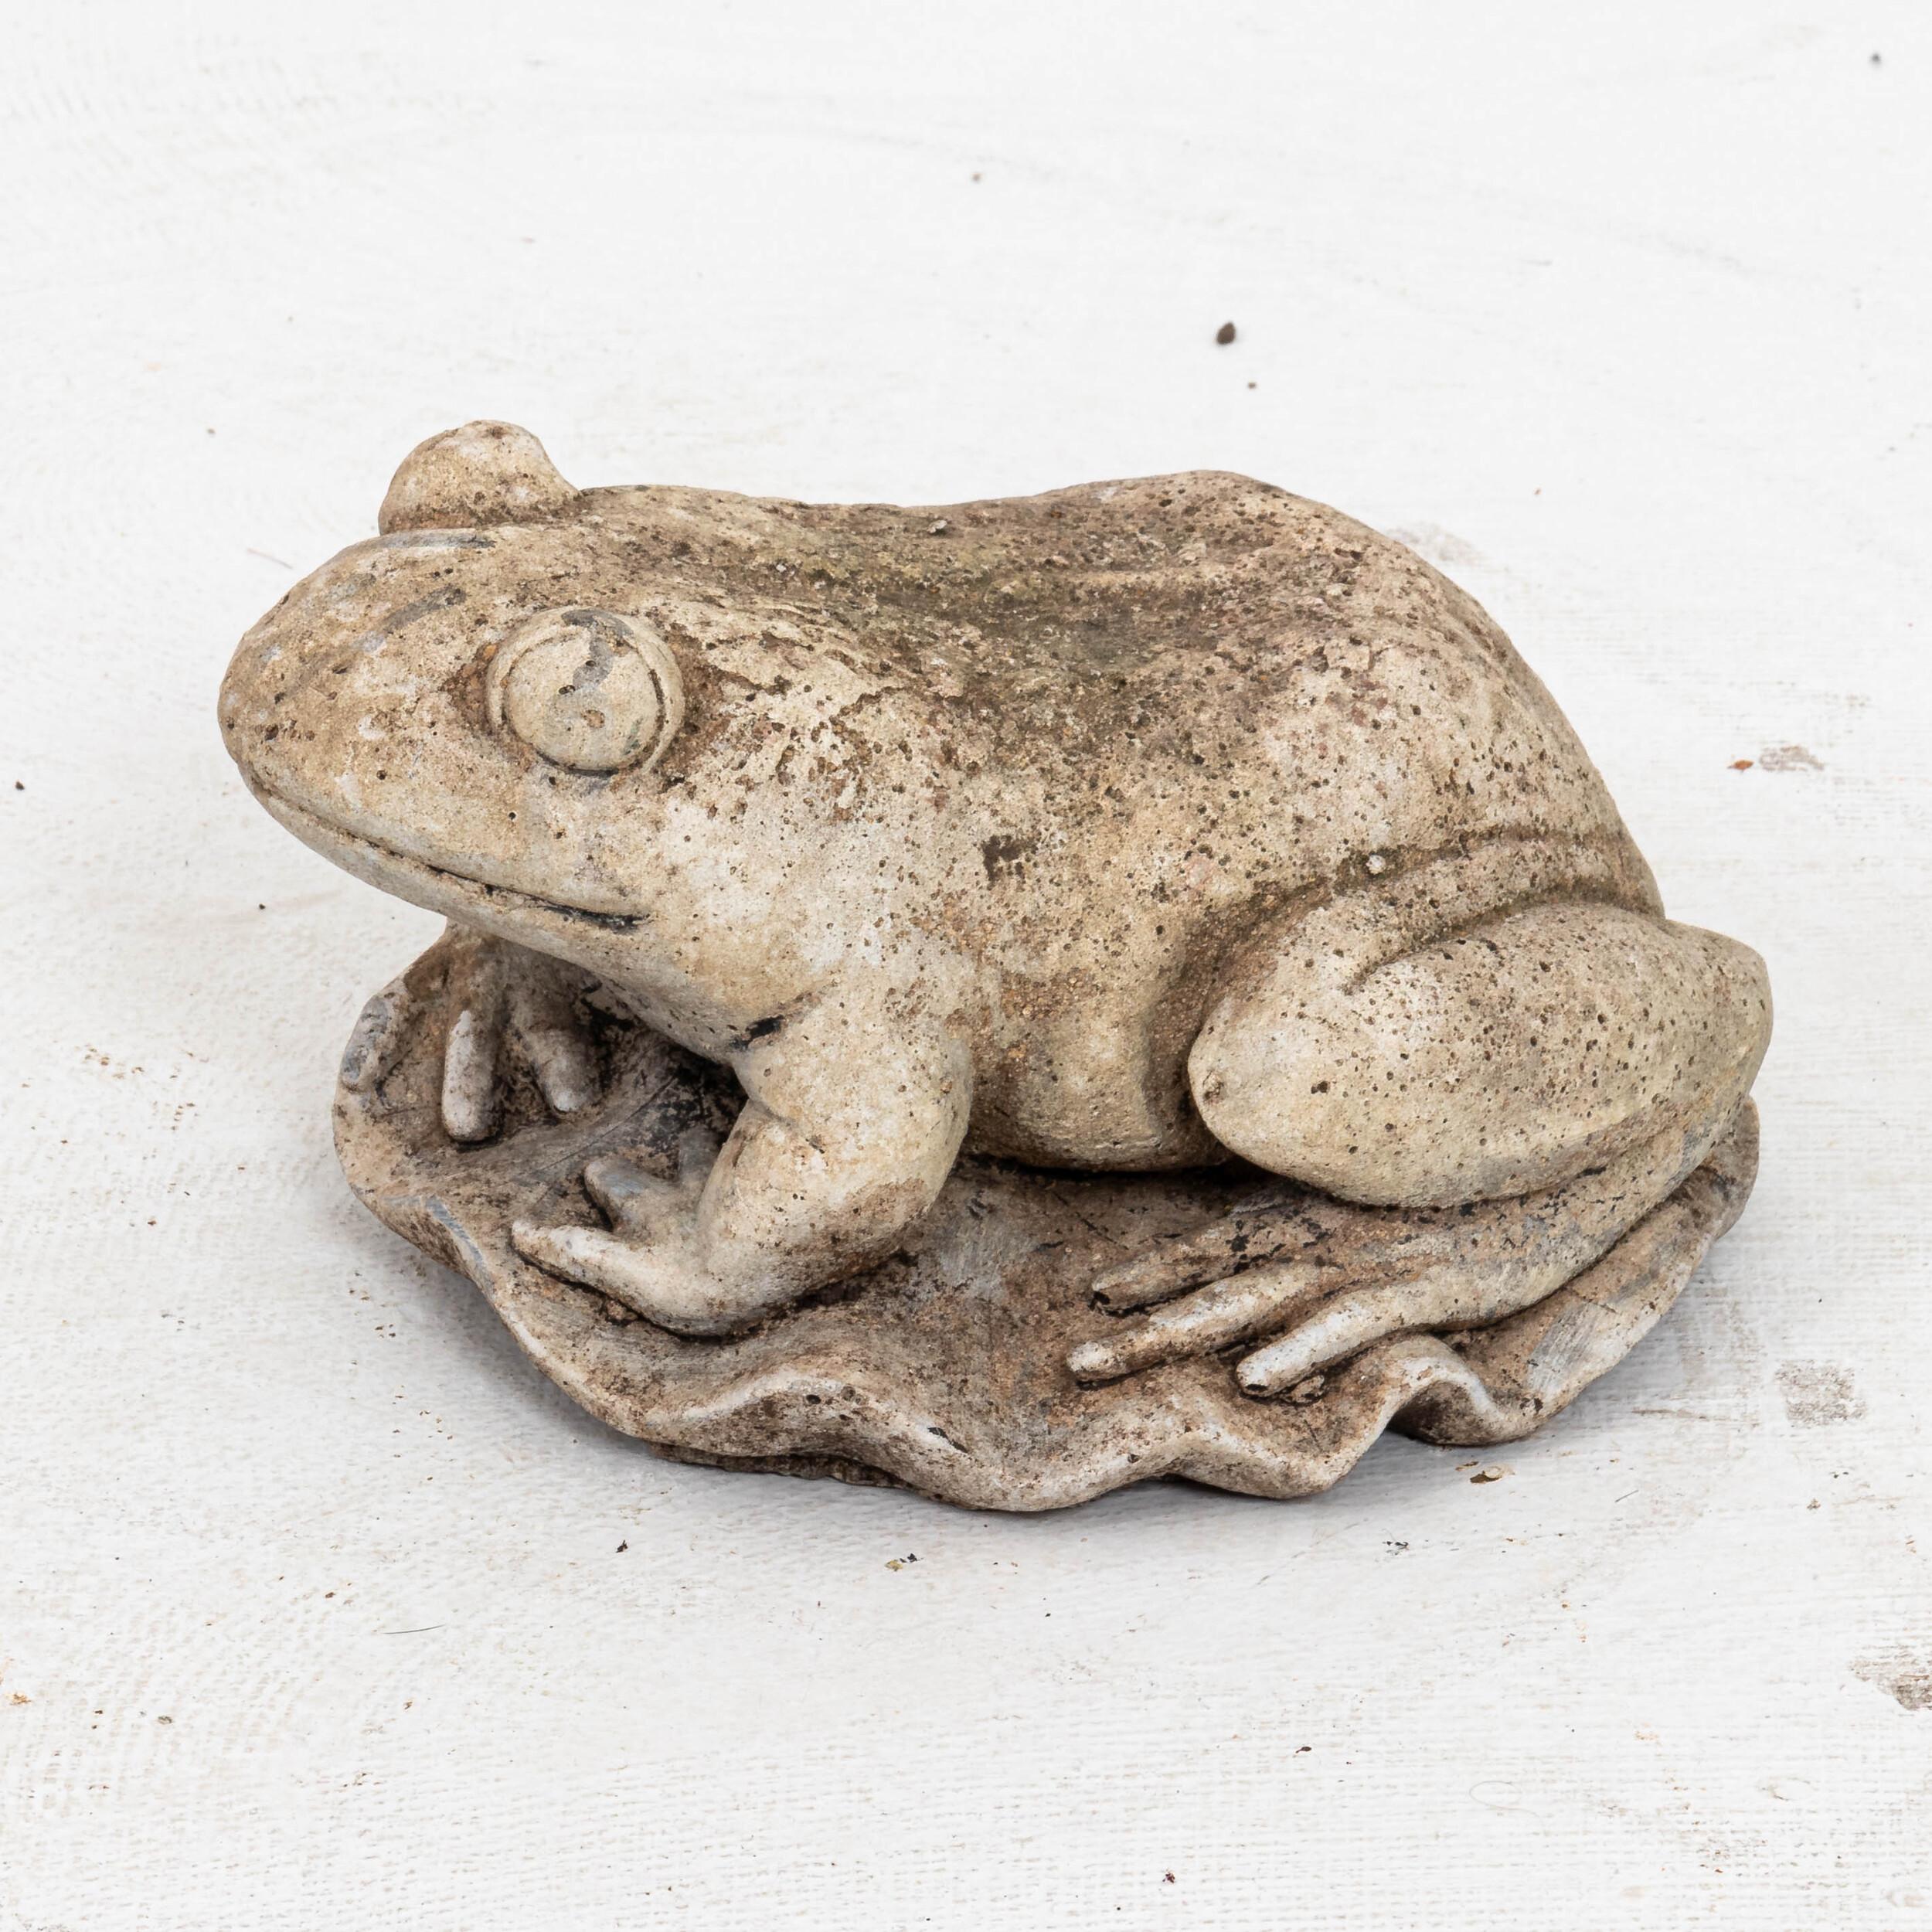 British Vintage Crouching Frog Garden Ornament